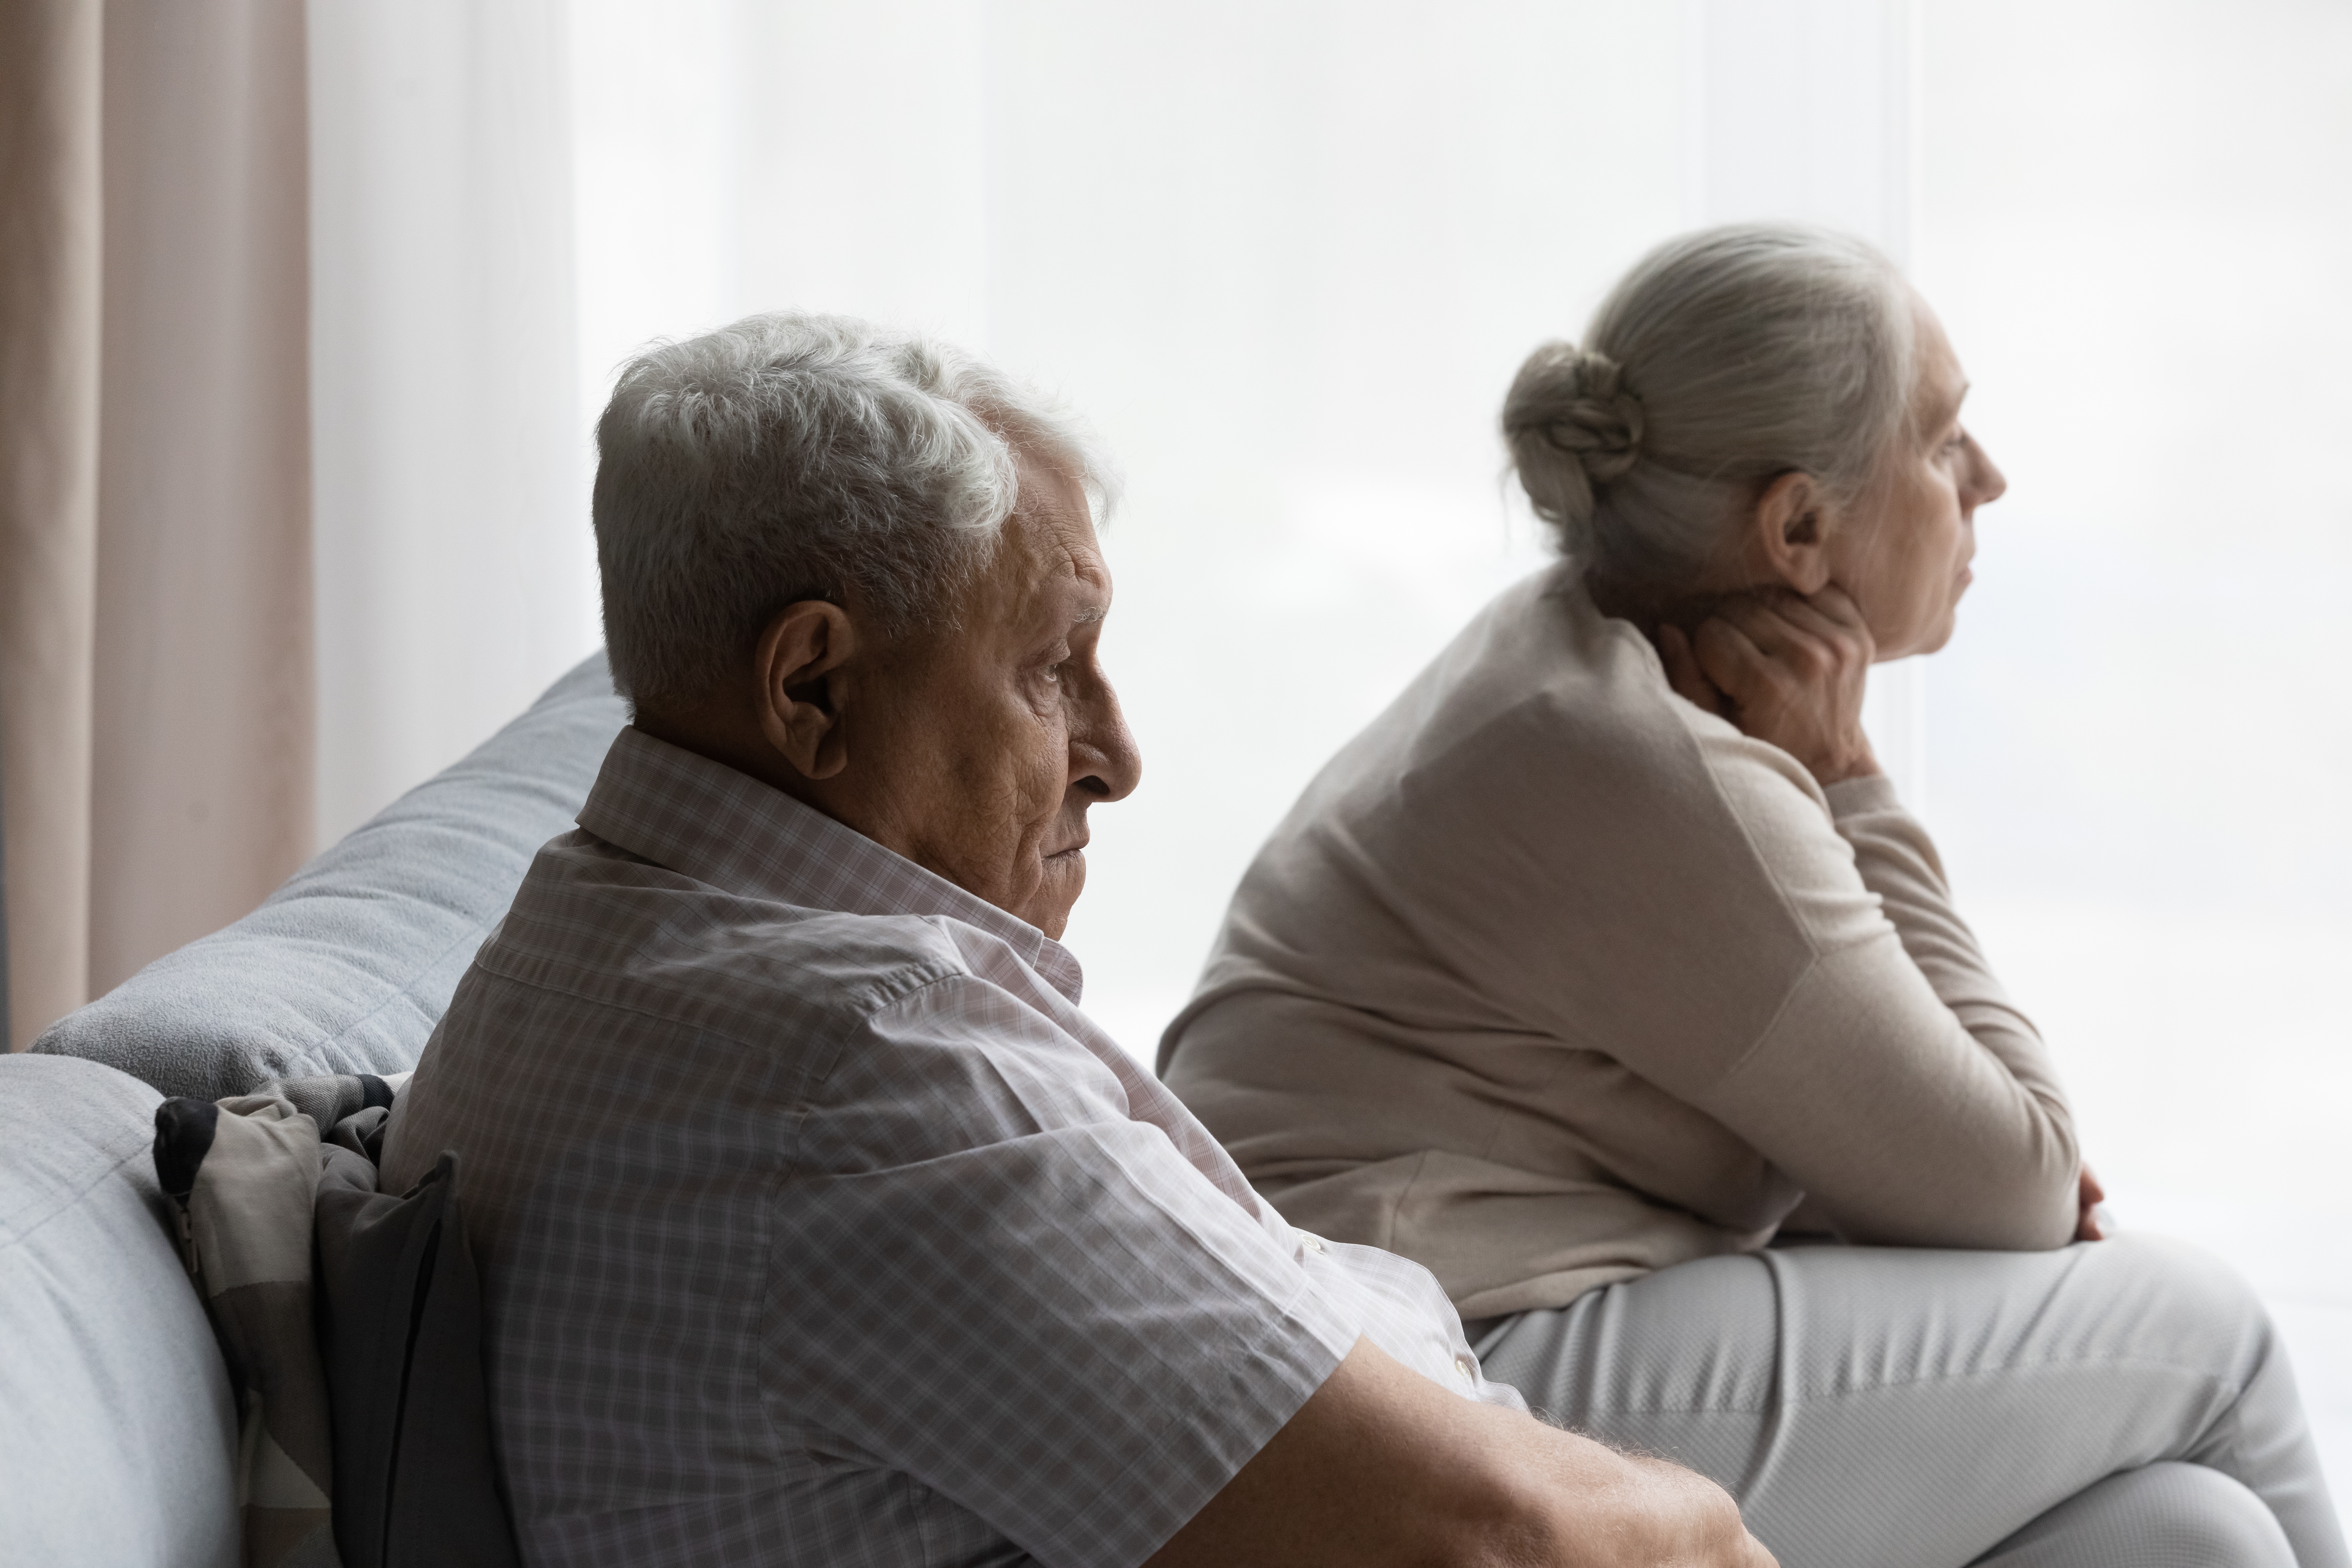 Un couple de personnes âgées à l'air sérieux | Source : Shutterstock